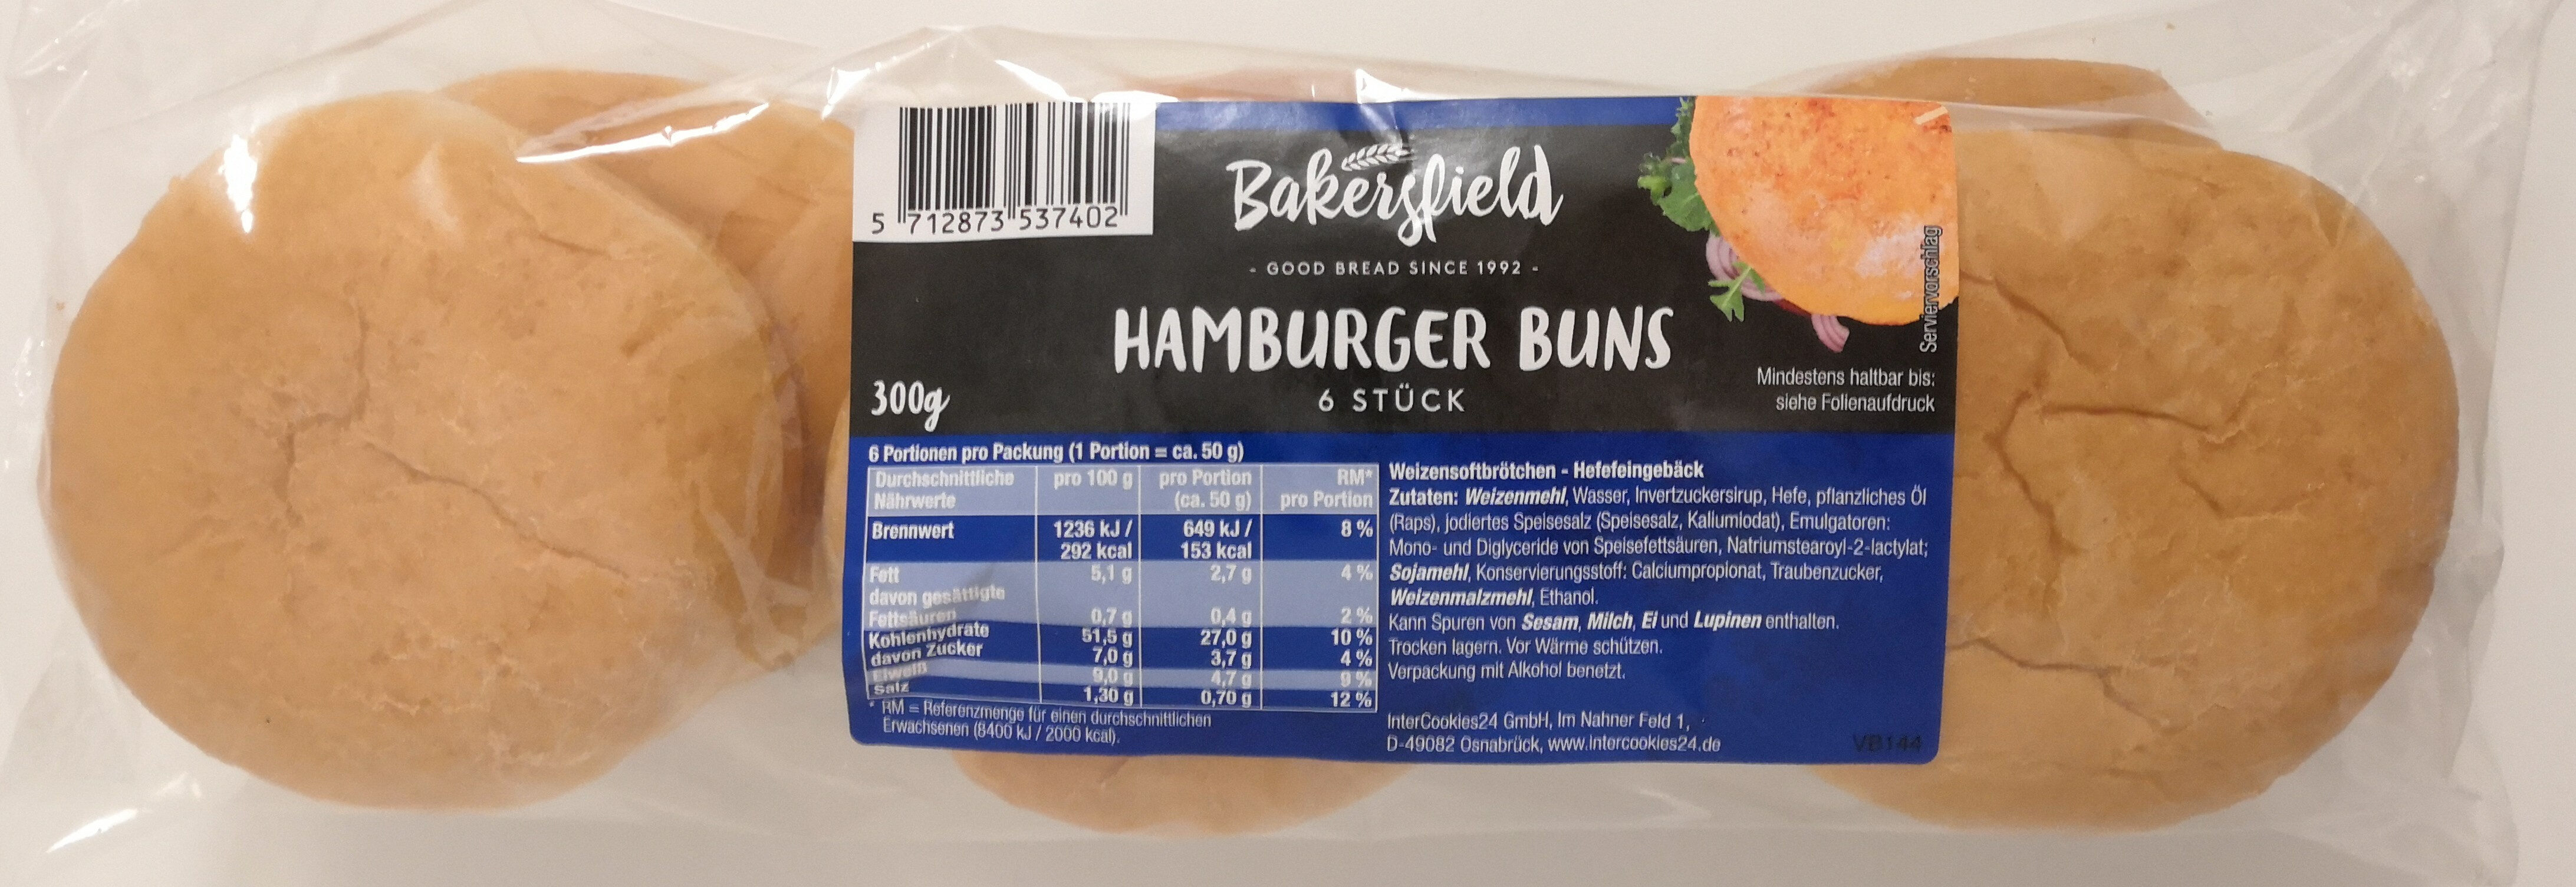 Hamburger Buns - Produkt - de